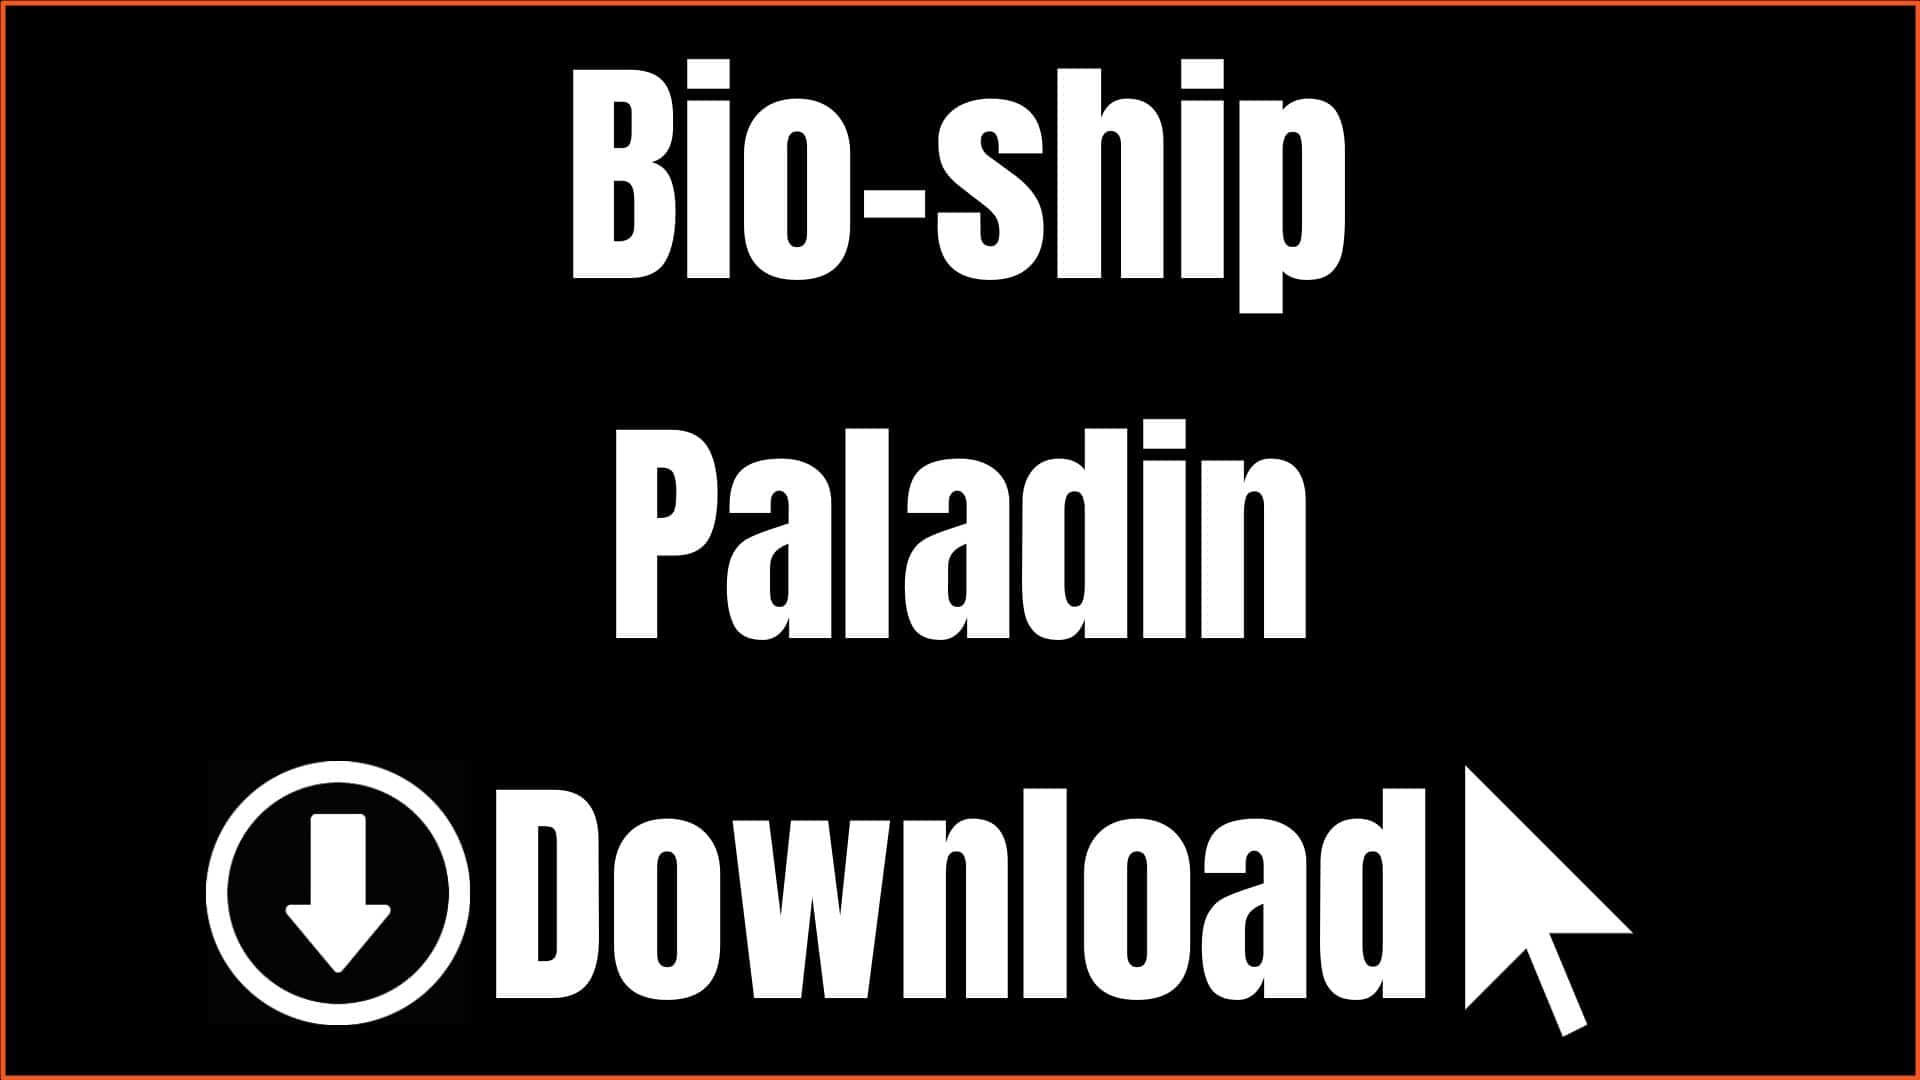 Bio-ship Paladin Download